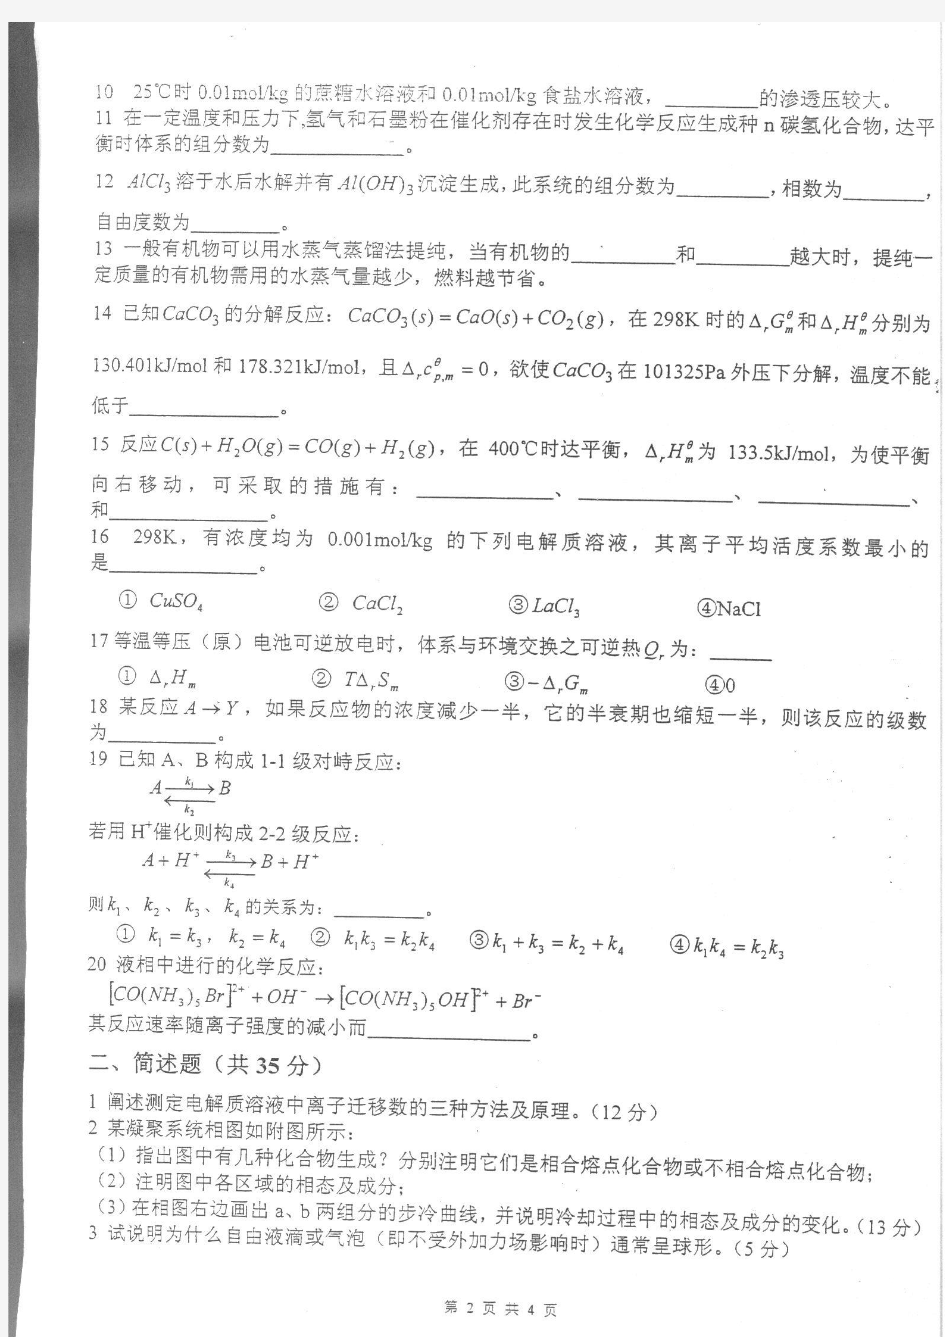 2005年重庆大学硕士研究生物理化学(含物理化学实验)入学考试考试